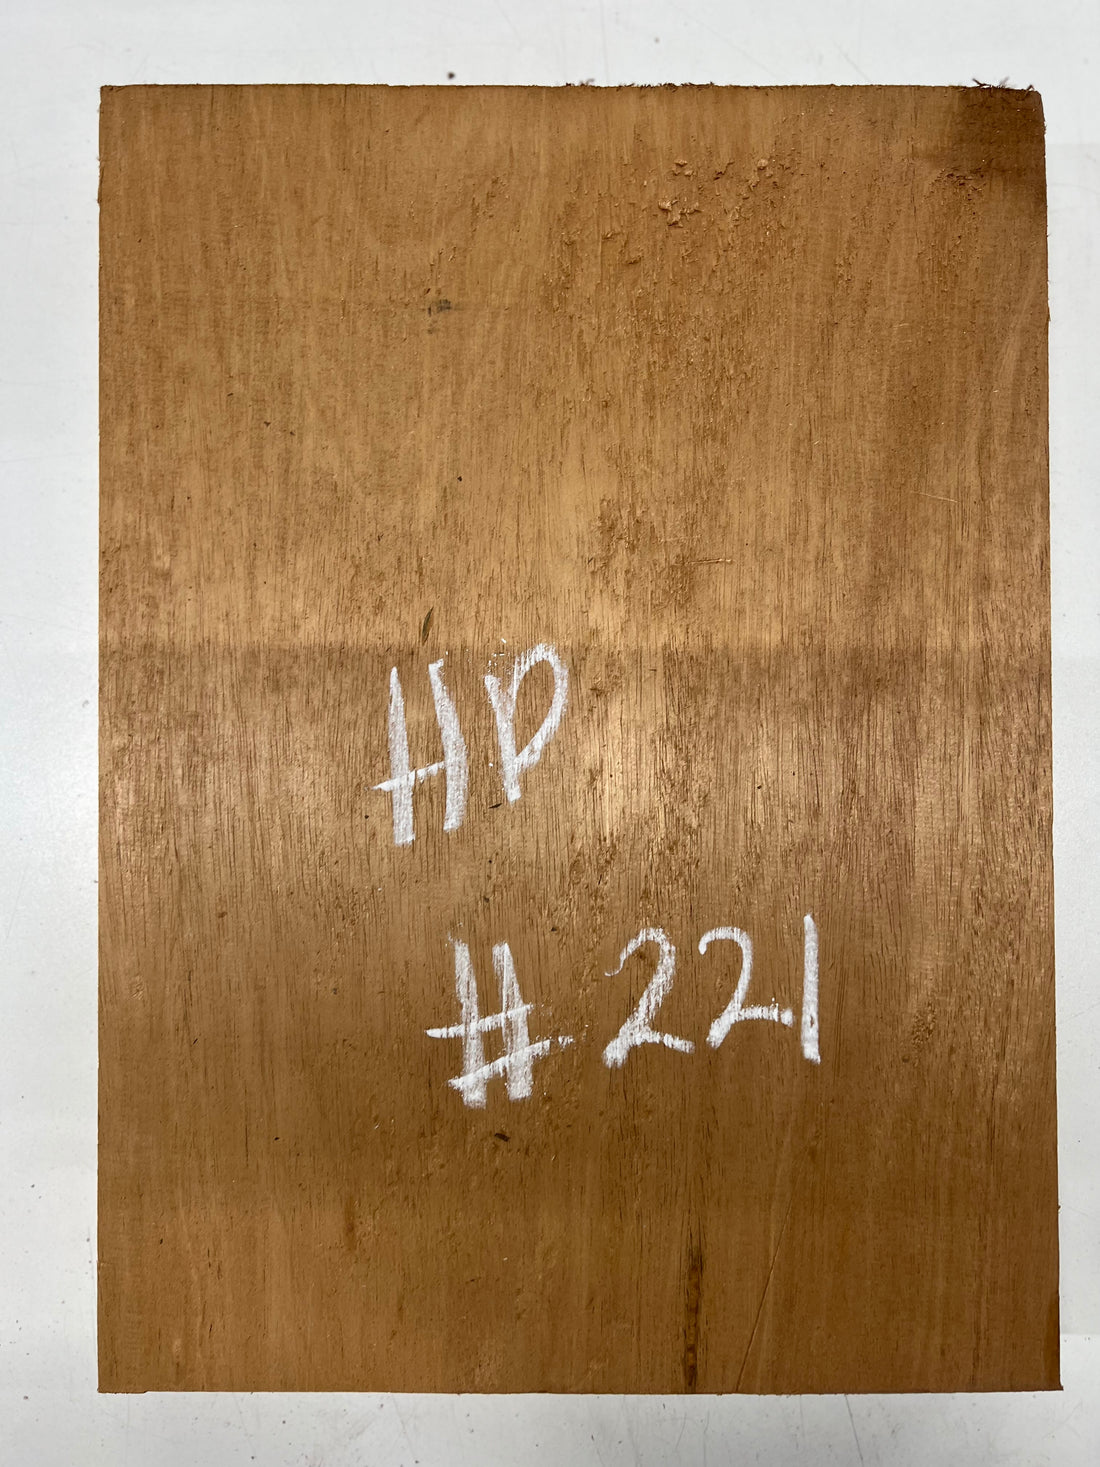 Honduran Mahogany Lumber Board Wood Blank 17-1/2&quot;x 12-5/8&quot;x 1-3/4&quot; 